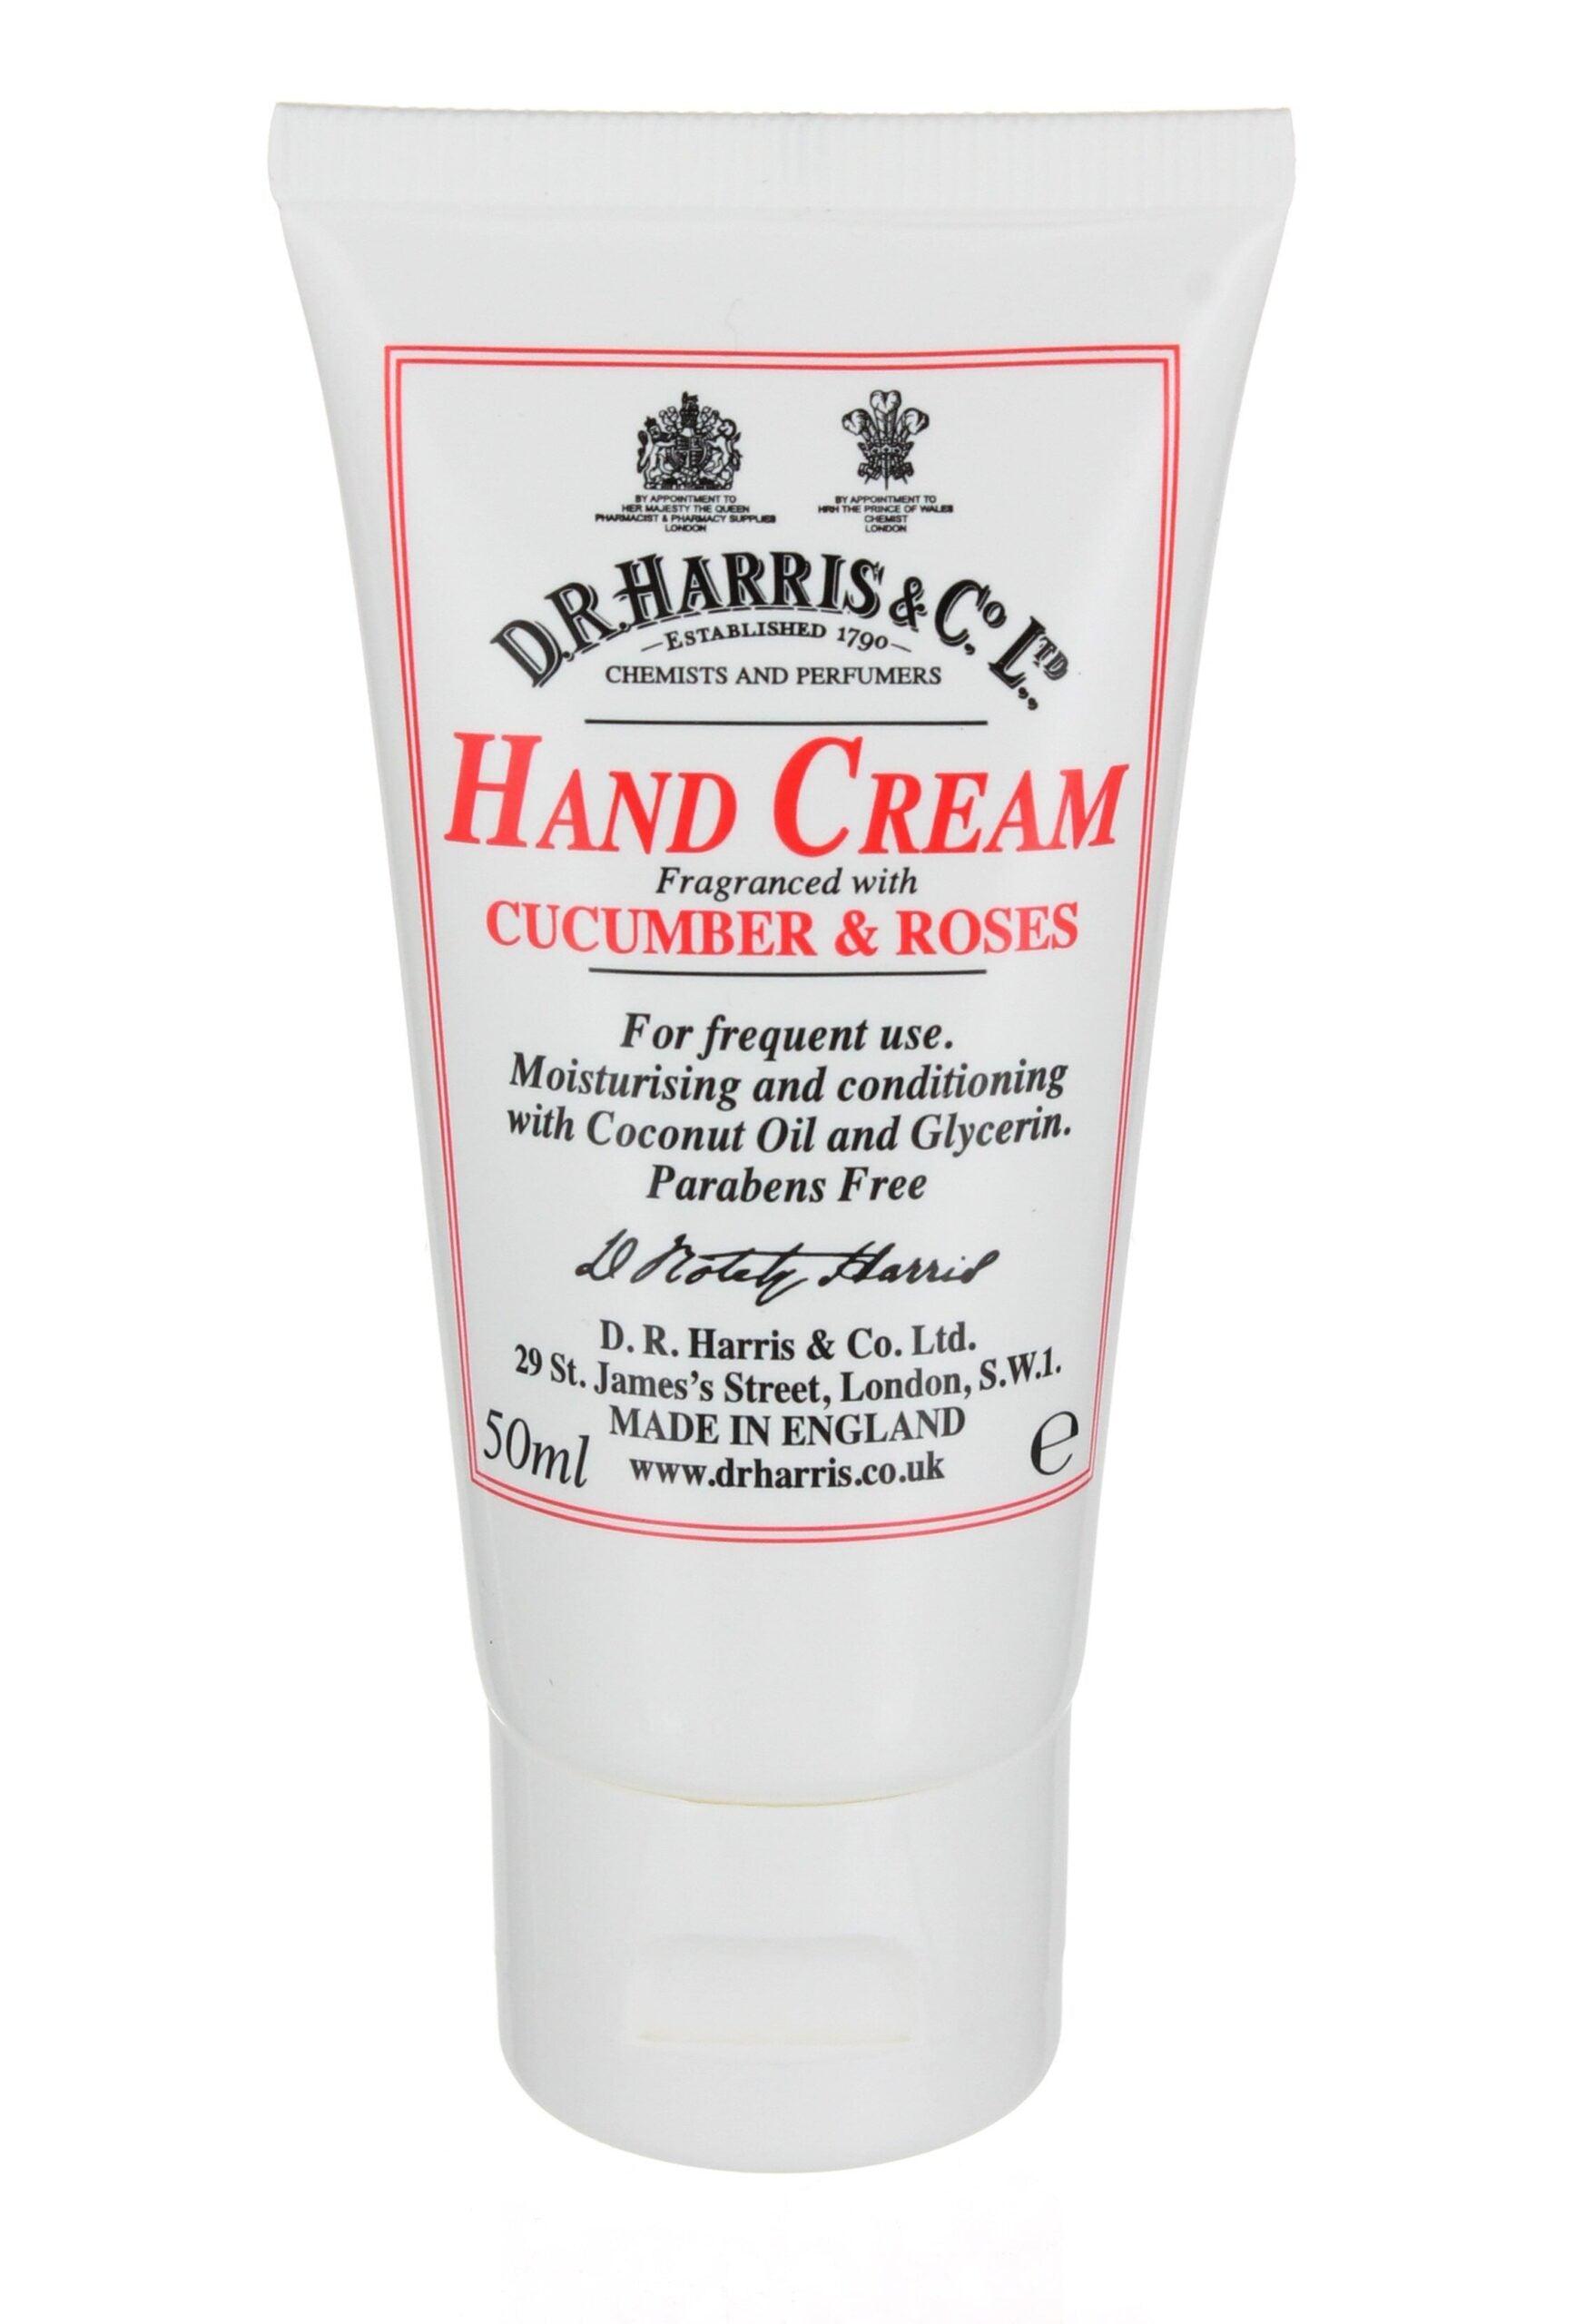 D.R. Harris Cucumber and Roses Hand Cream